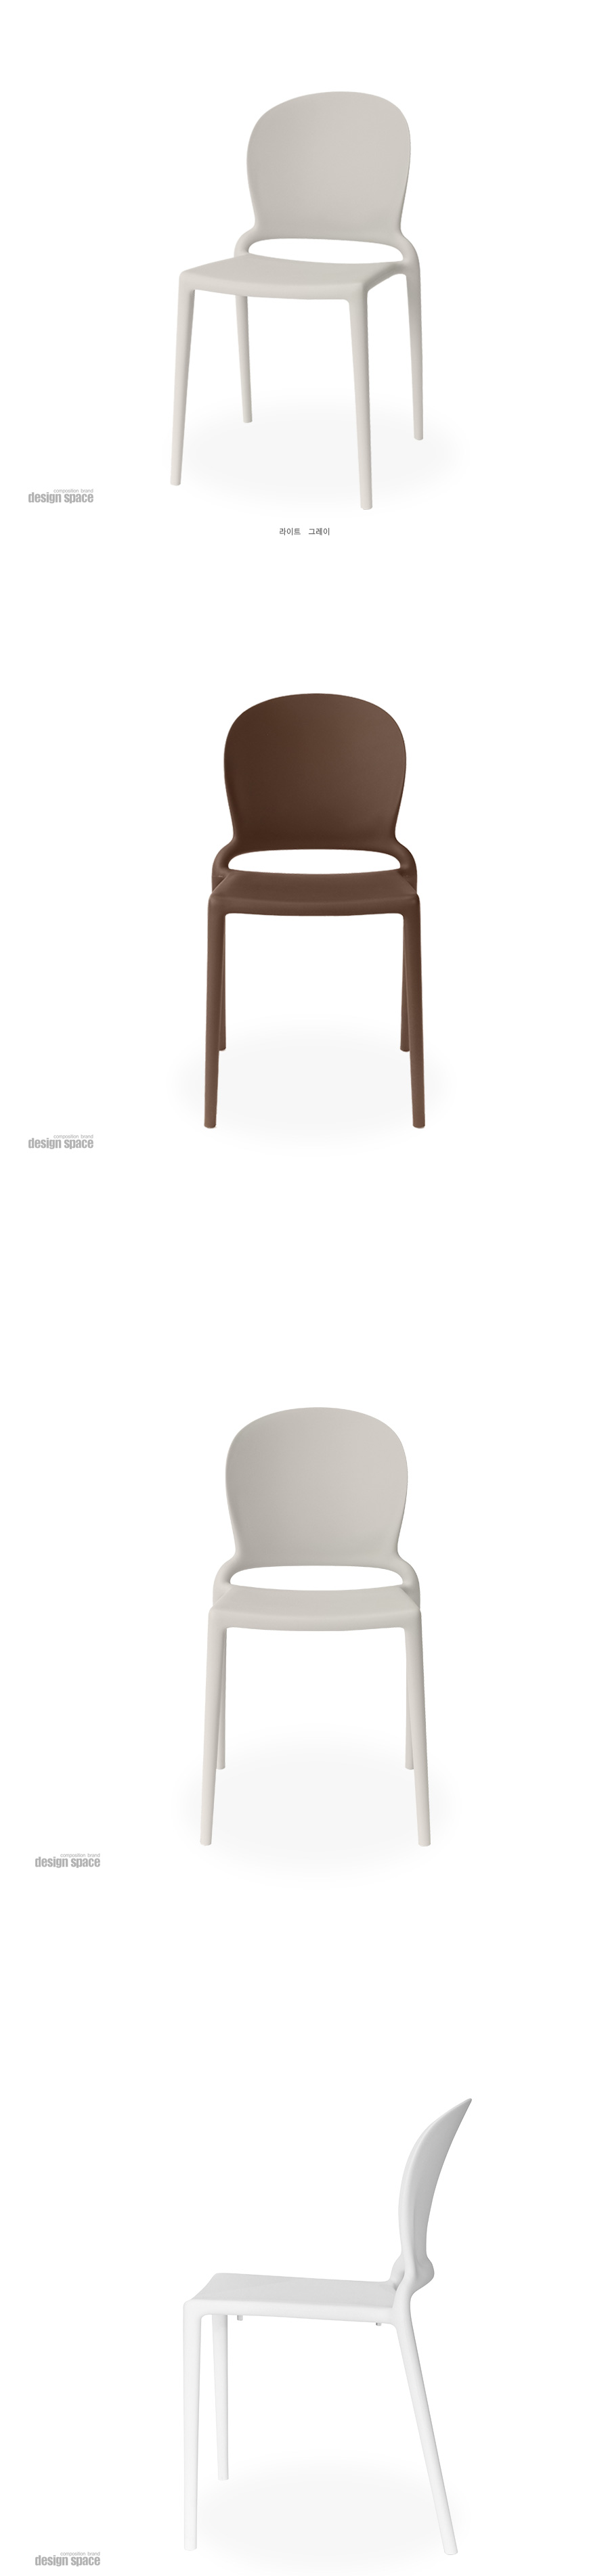 nancy-chair-(낸시-체어-미들스쿨)_03.jpg